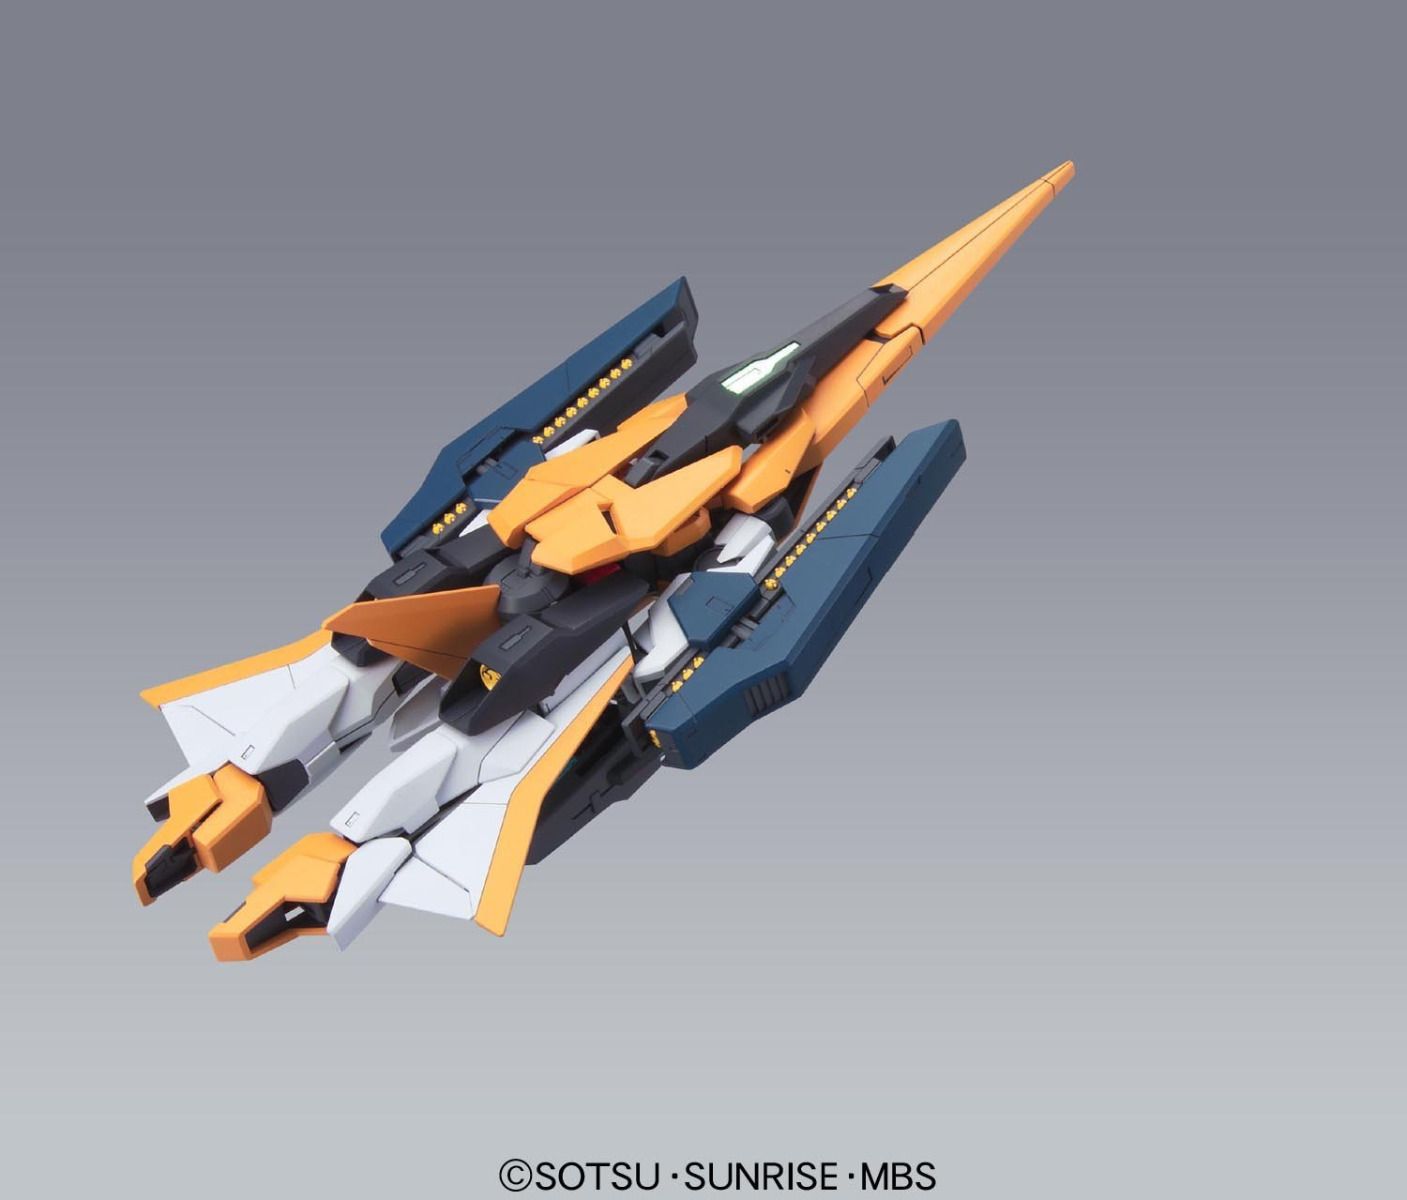 HG Arios Gundam GNHW/M - (Mobile Suit Gundam 00)